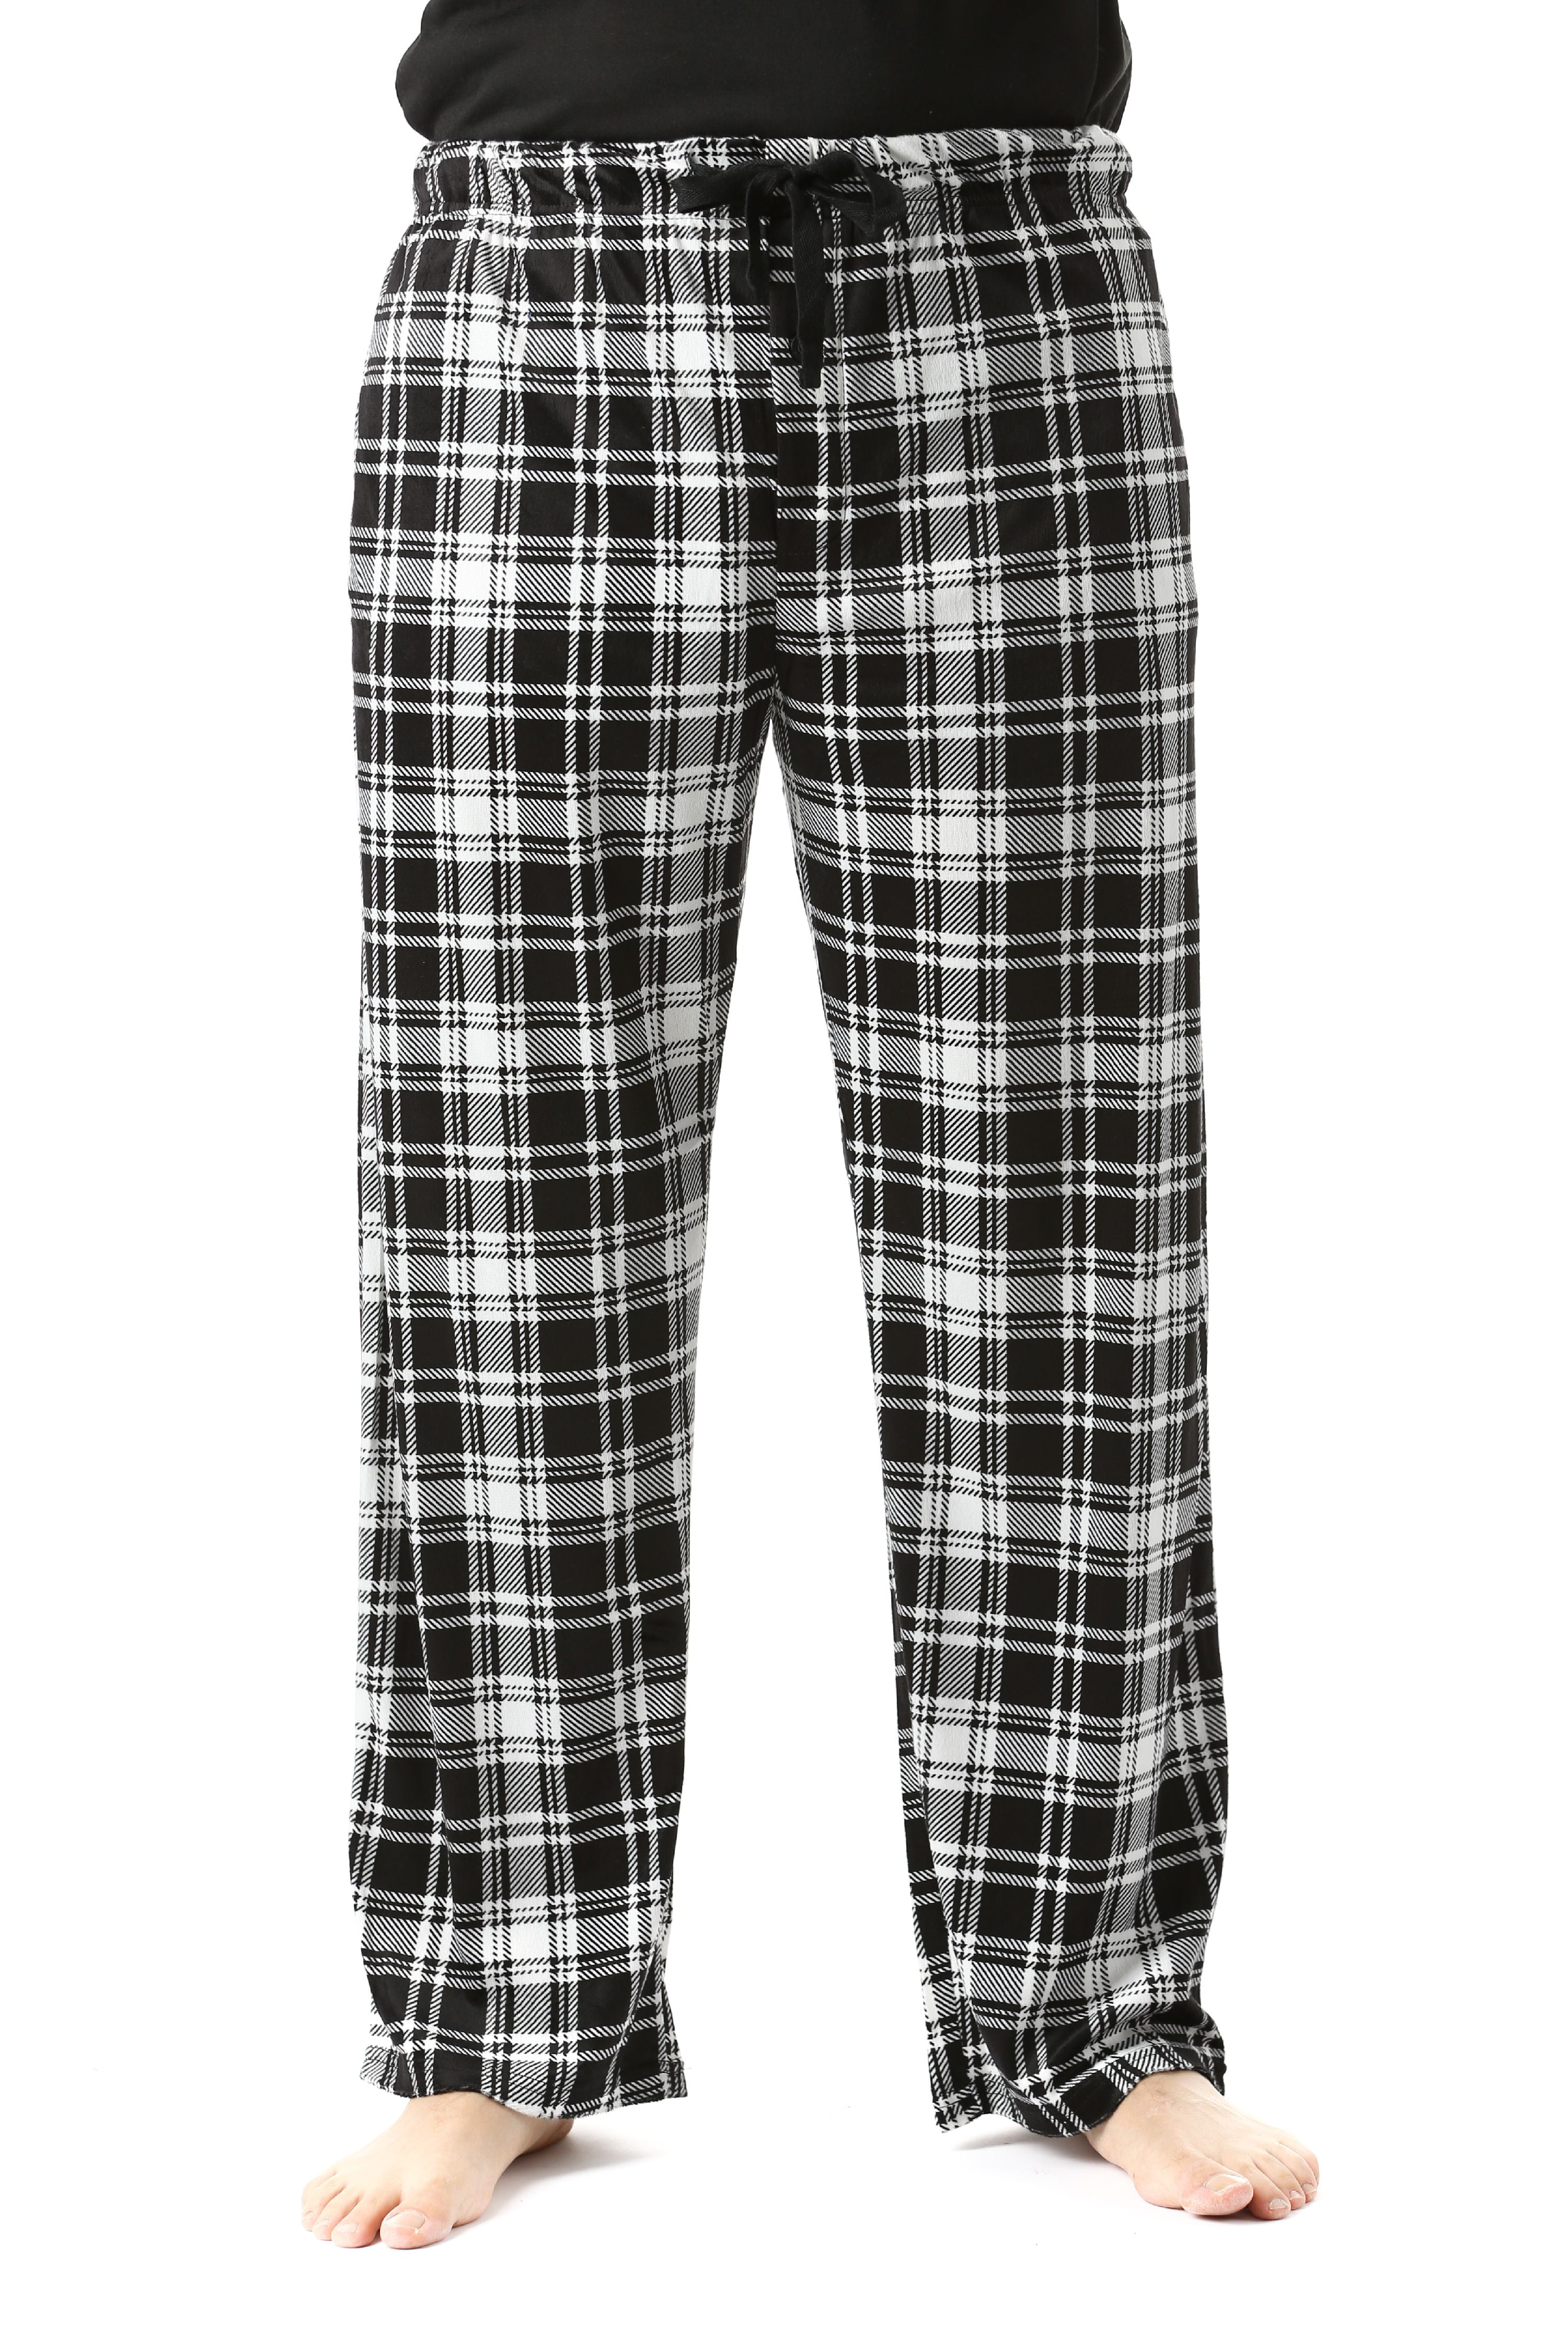 45903-17-XXL #FollowMe Fleece Pajama Pants for Men / Sleepwear / PJs ...